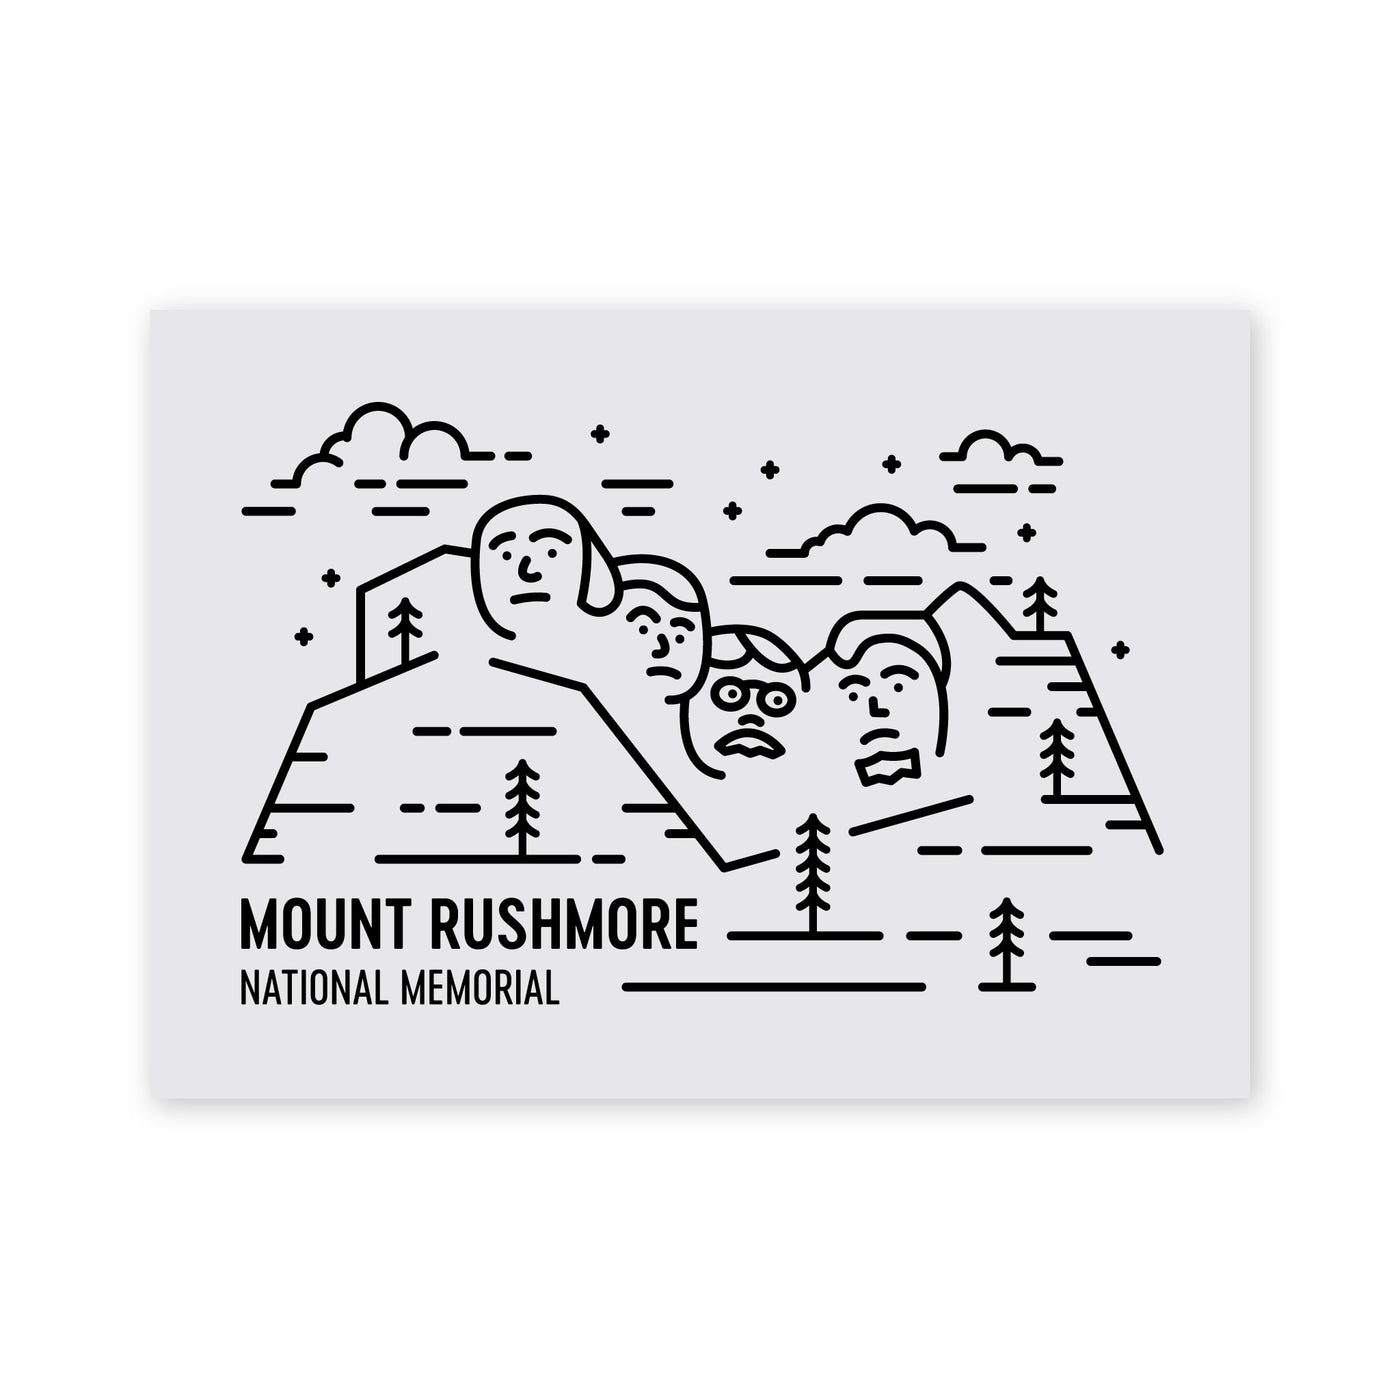 Mount Rushmore National Memorial Postcard